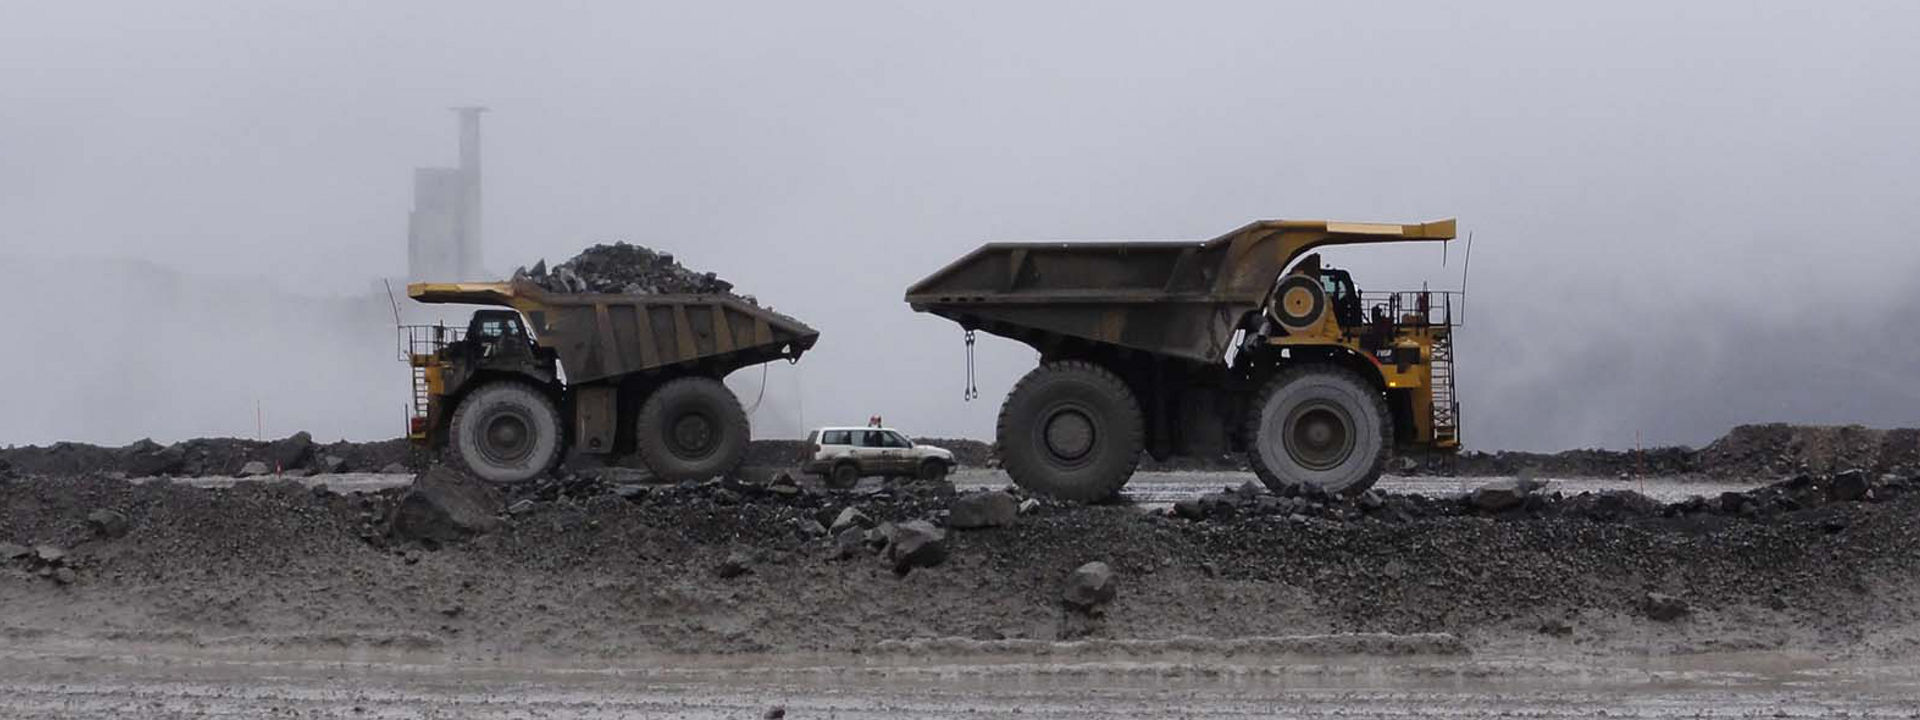 Négy Bridgestone abroncsokkal felszerelt terepjáró gép dolgozik egy külszíni bányában